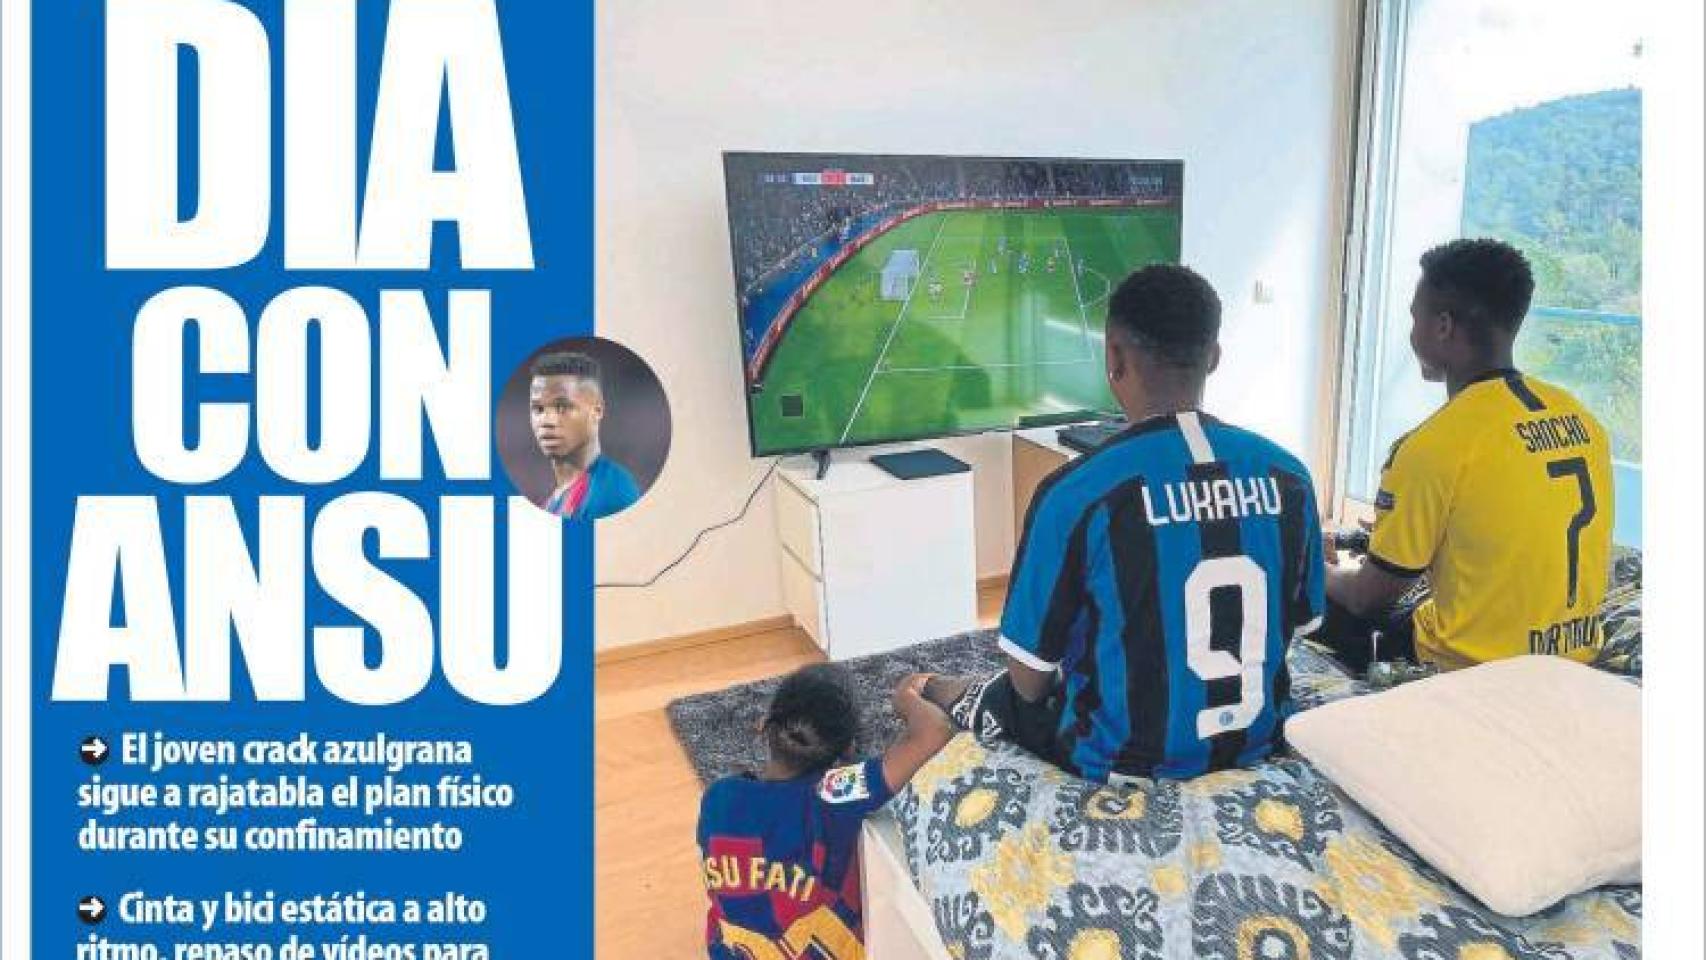 La portada del diario Mundo Deportivo (30/03/2020)